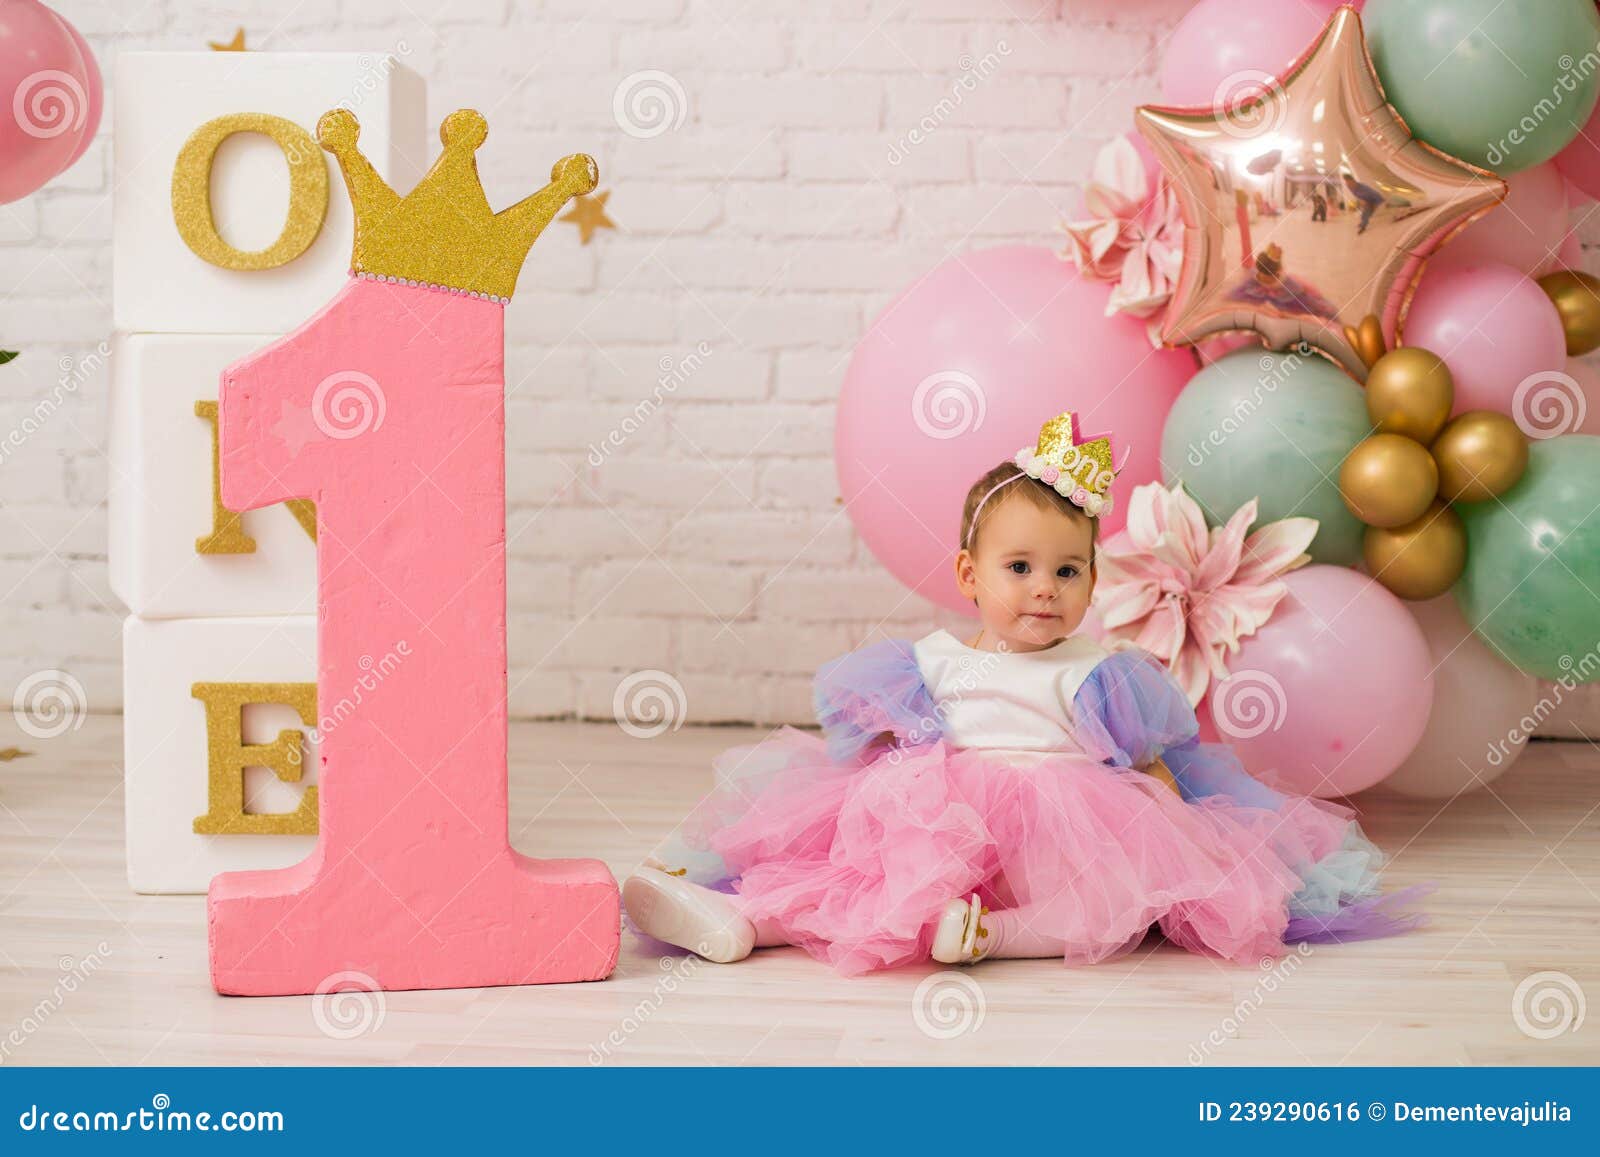  1st Birthday Girl Pink Stars Bouquet